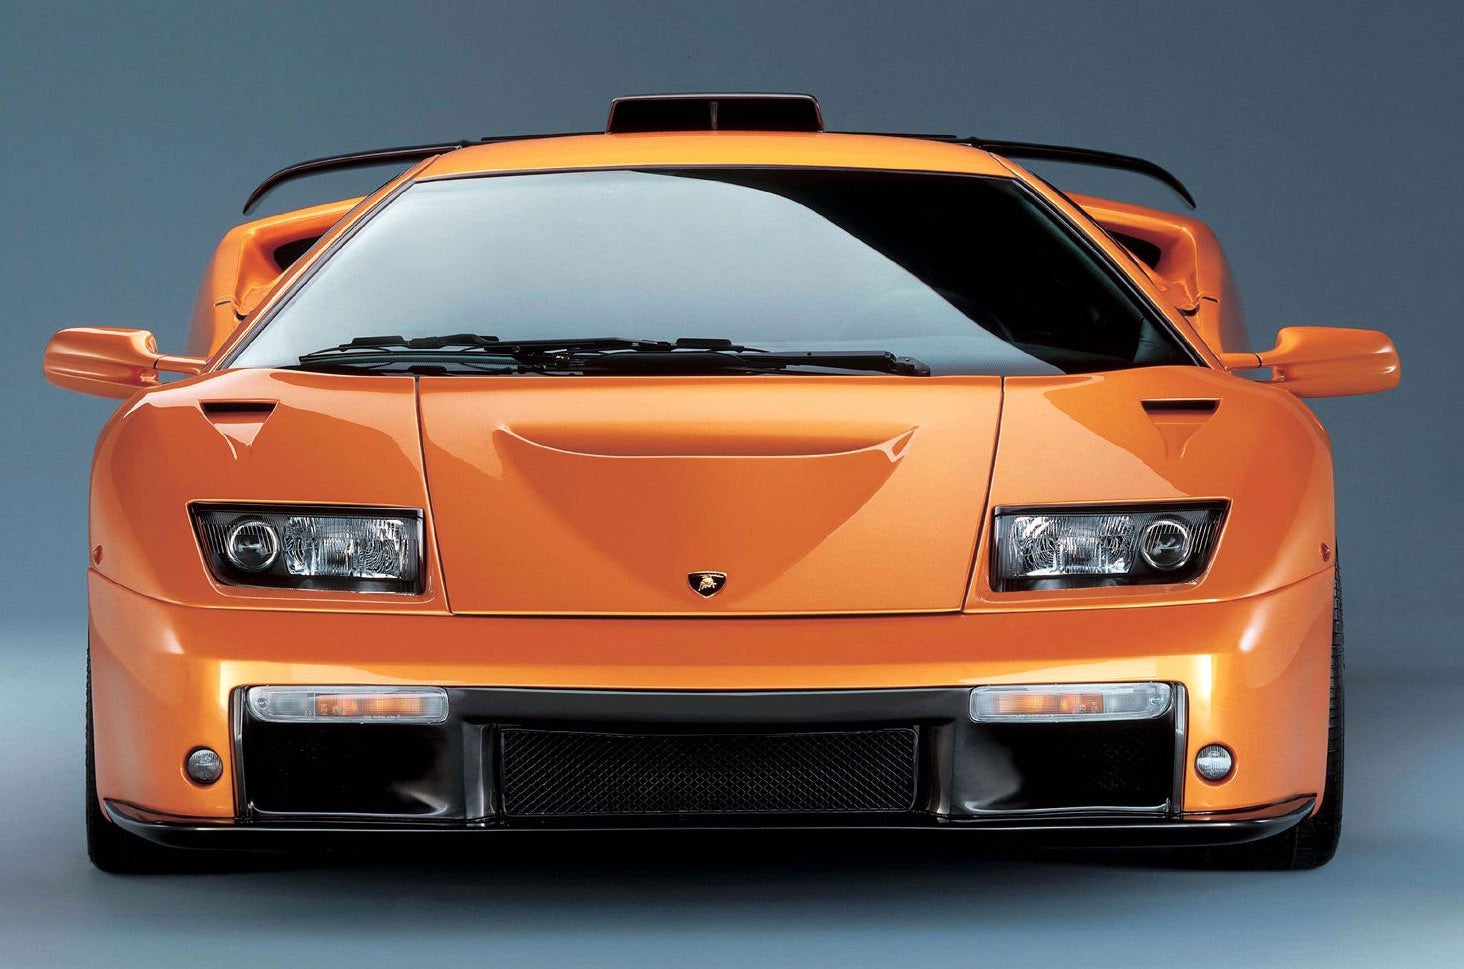 2001 Lamborghini Diablo - Pictures - CarGurus